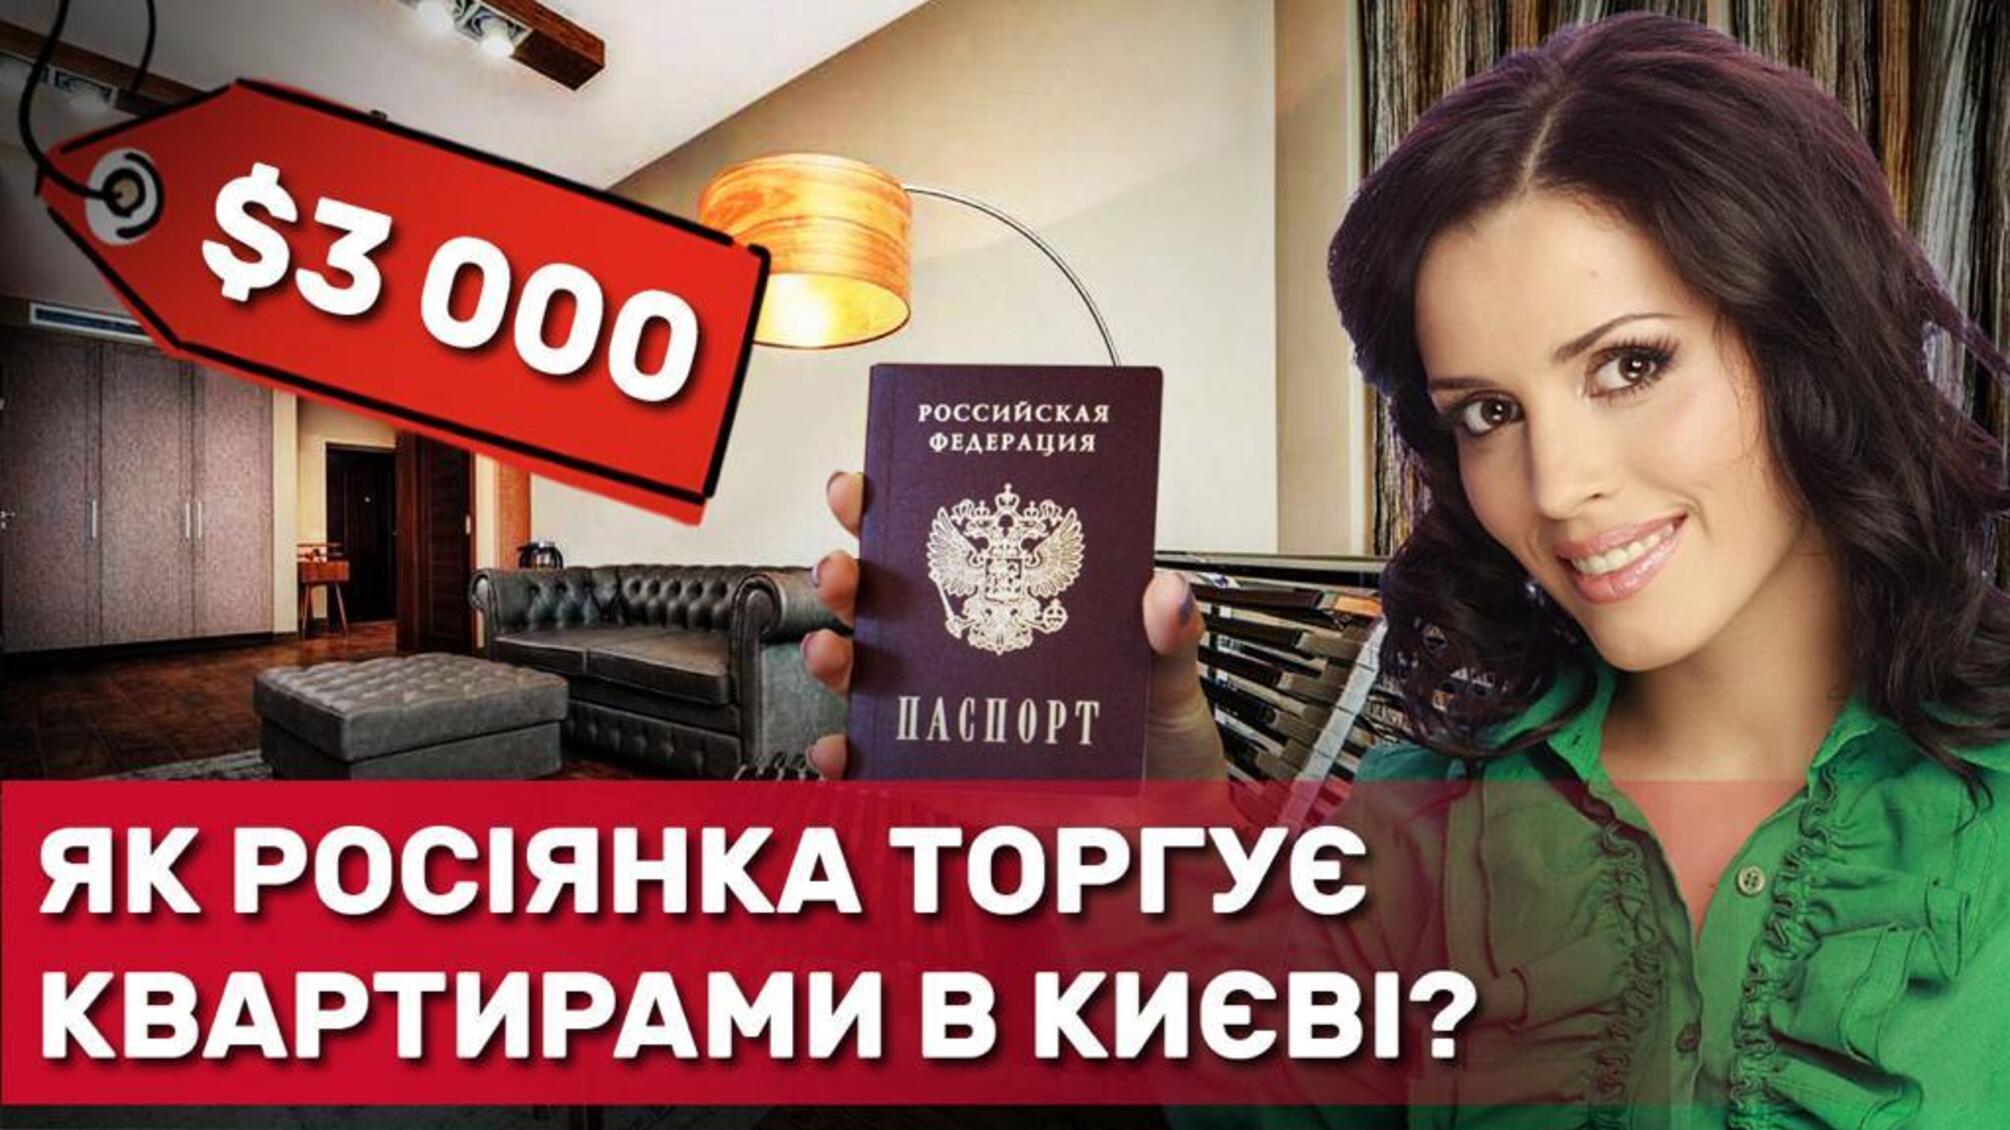 Крымчанка с российским паспортом зарабатывает на киевской недвижимости